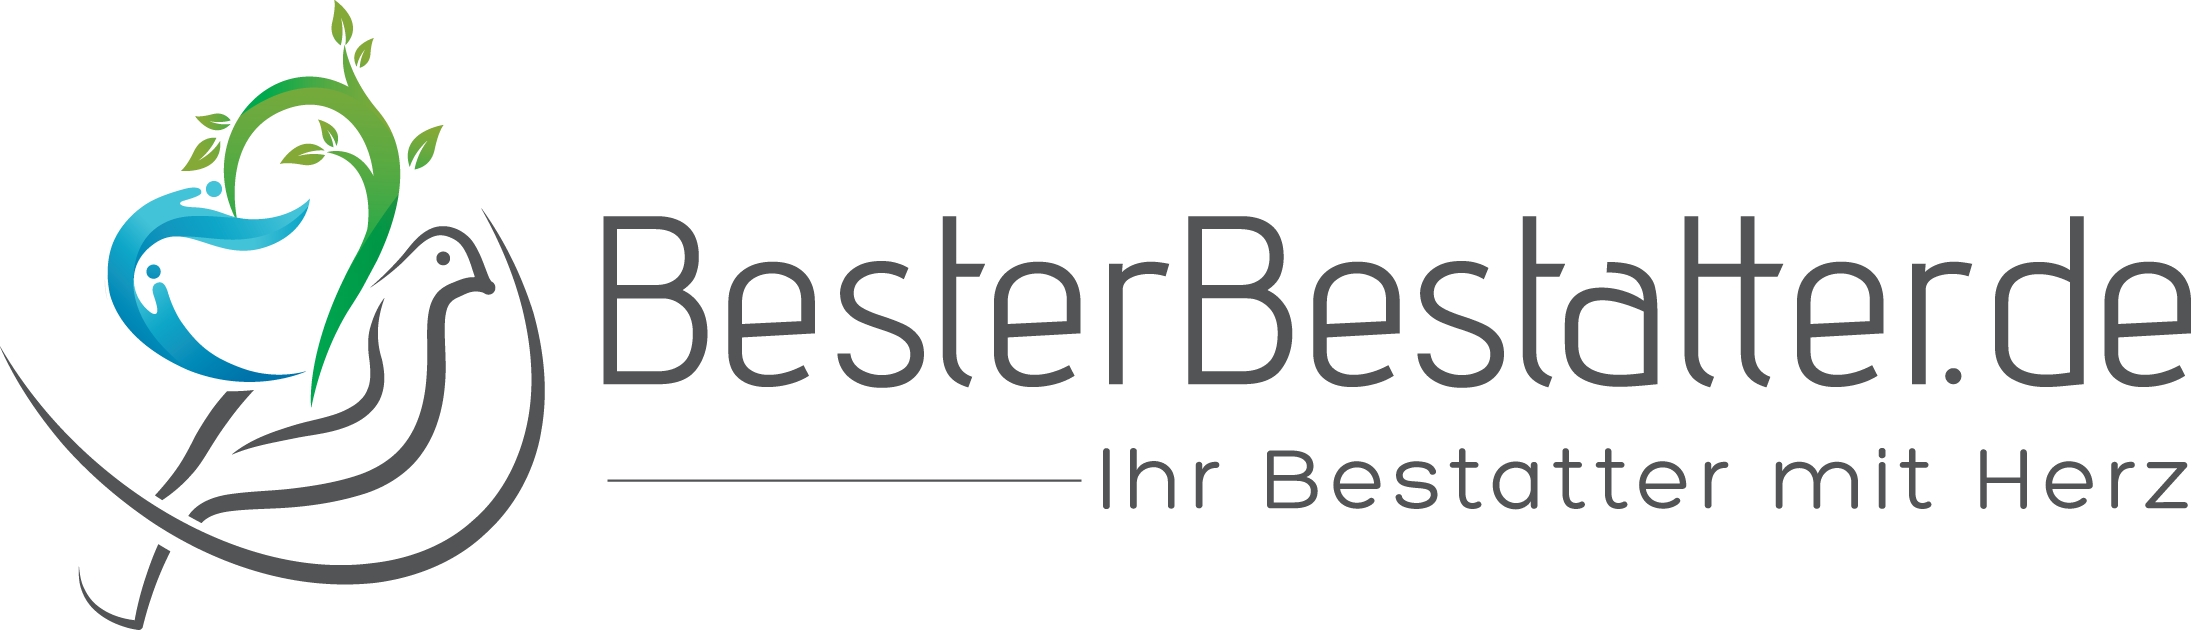 BesterBestatter.de (Die Bildrechte liegen bei dem Verfasser der Mitteilung.)